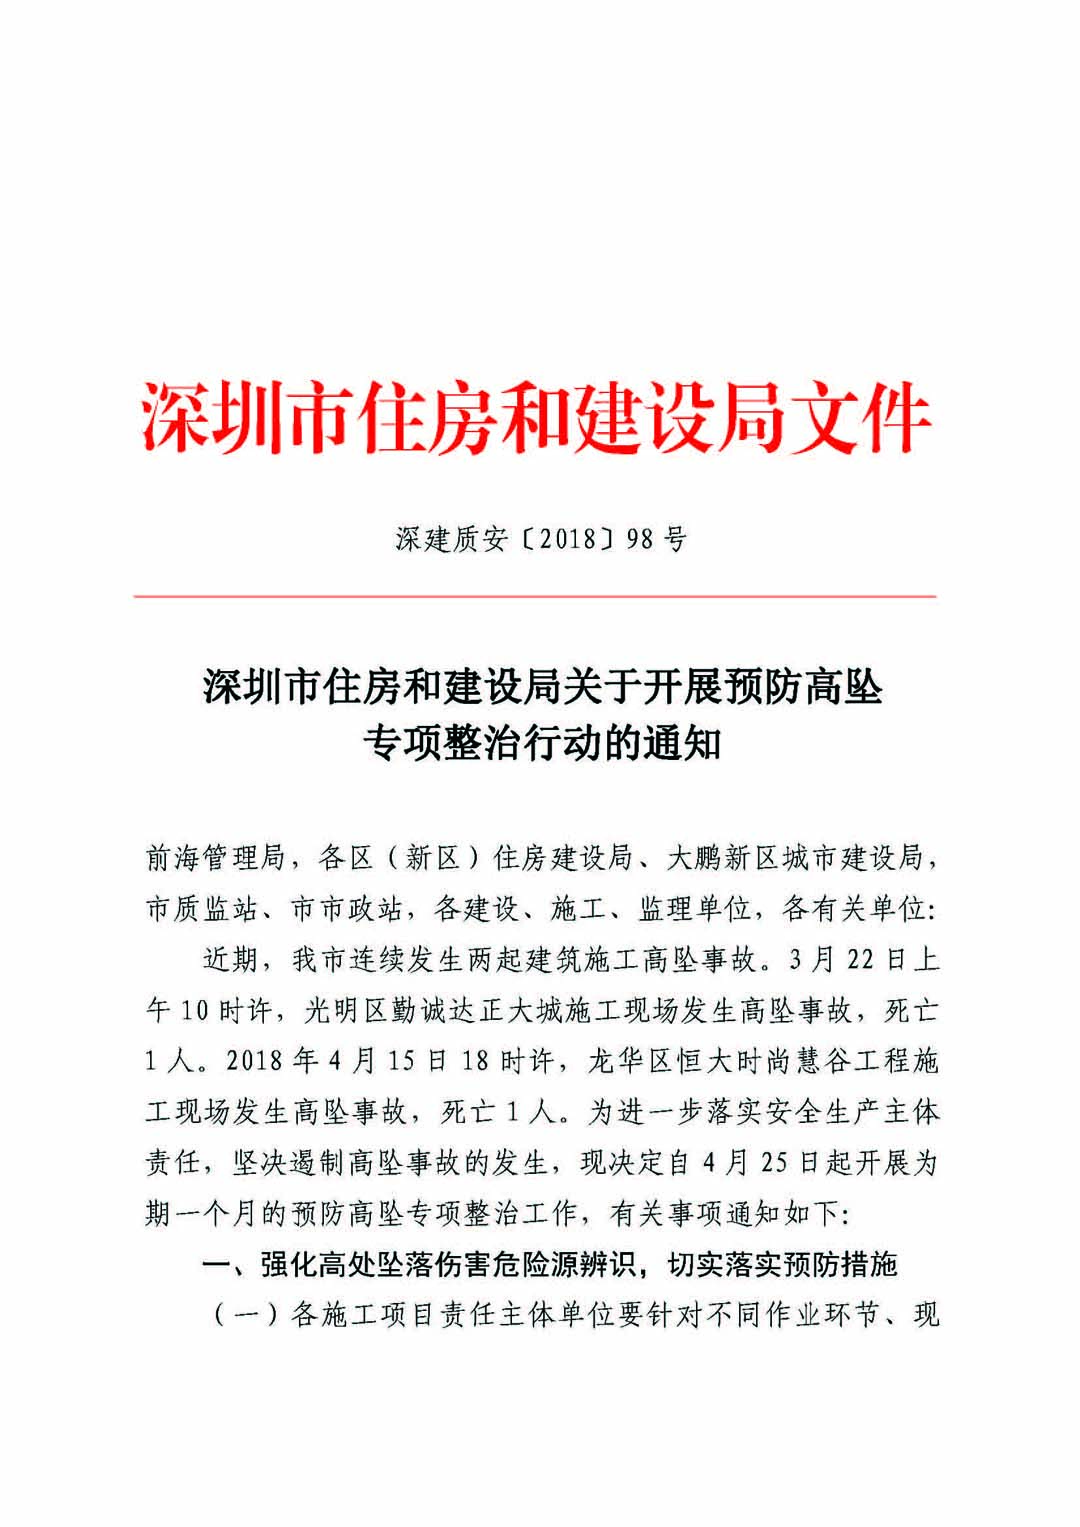 深圳市住房和建设局关于开展预防高坠专项整治行动的通知_页面_01.jpg